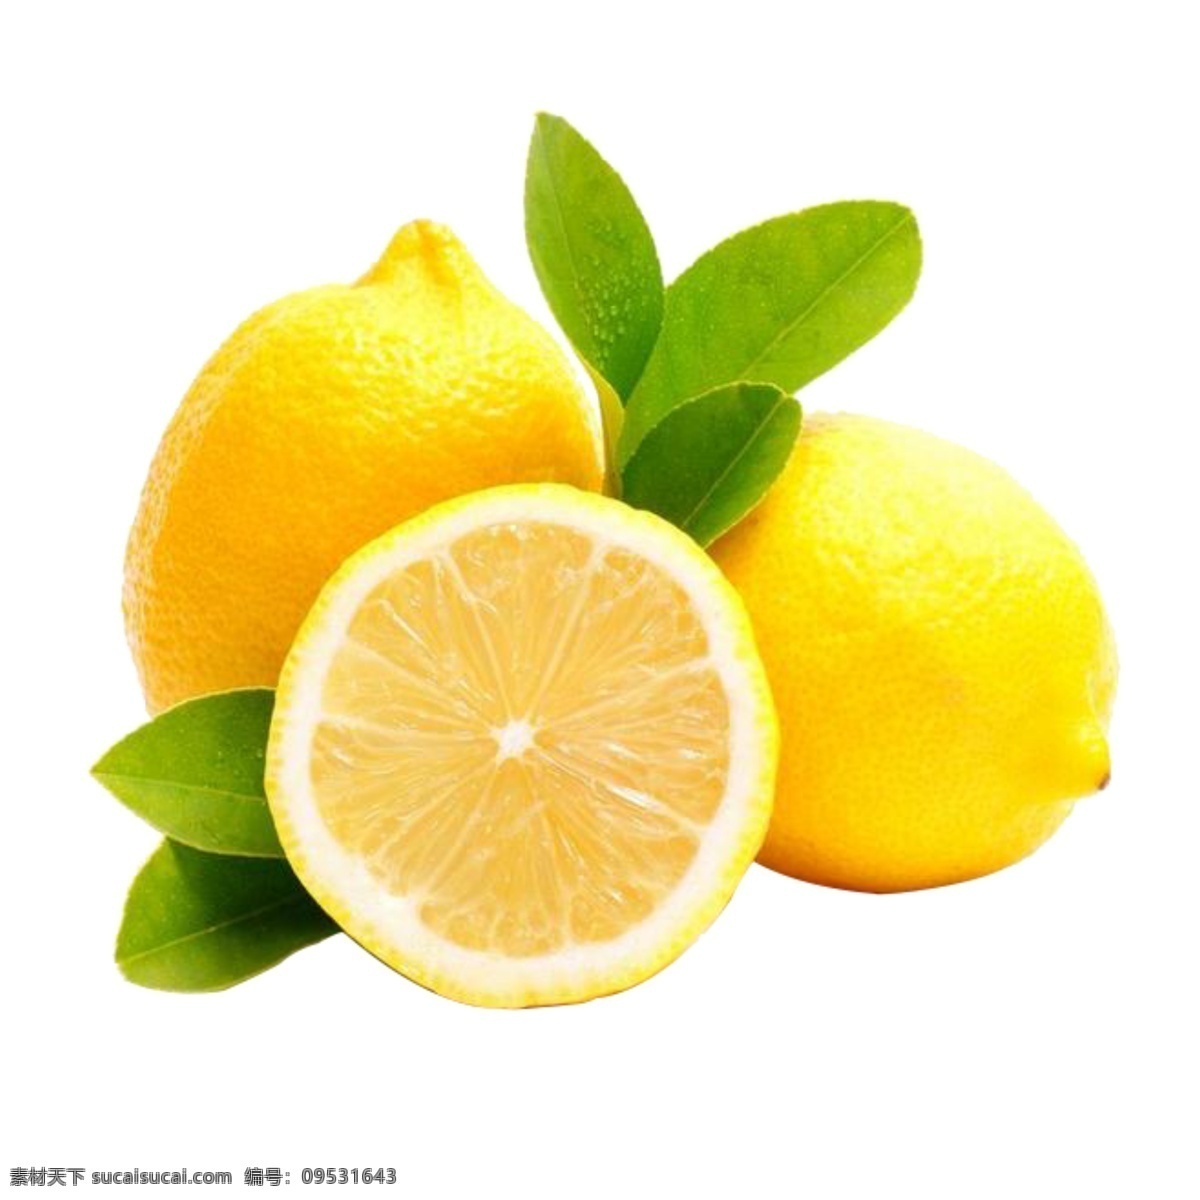 柠檬片 切开的柠檬 水果 水果拼盘 素材图